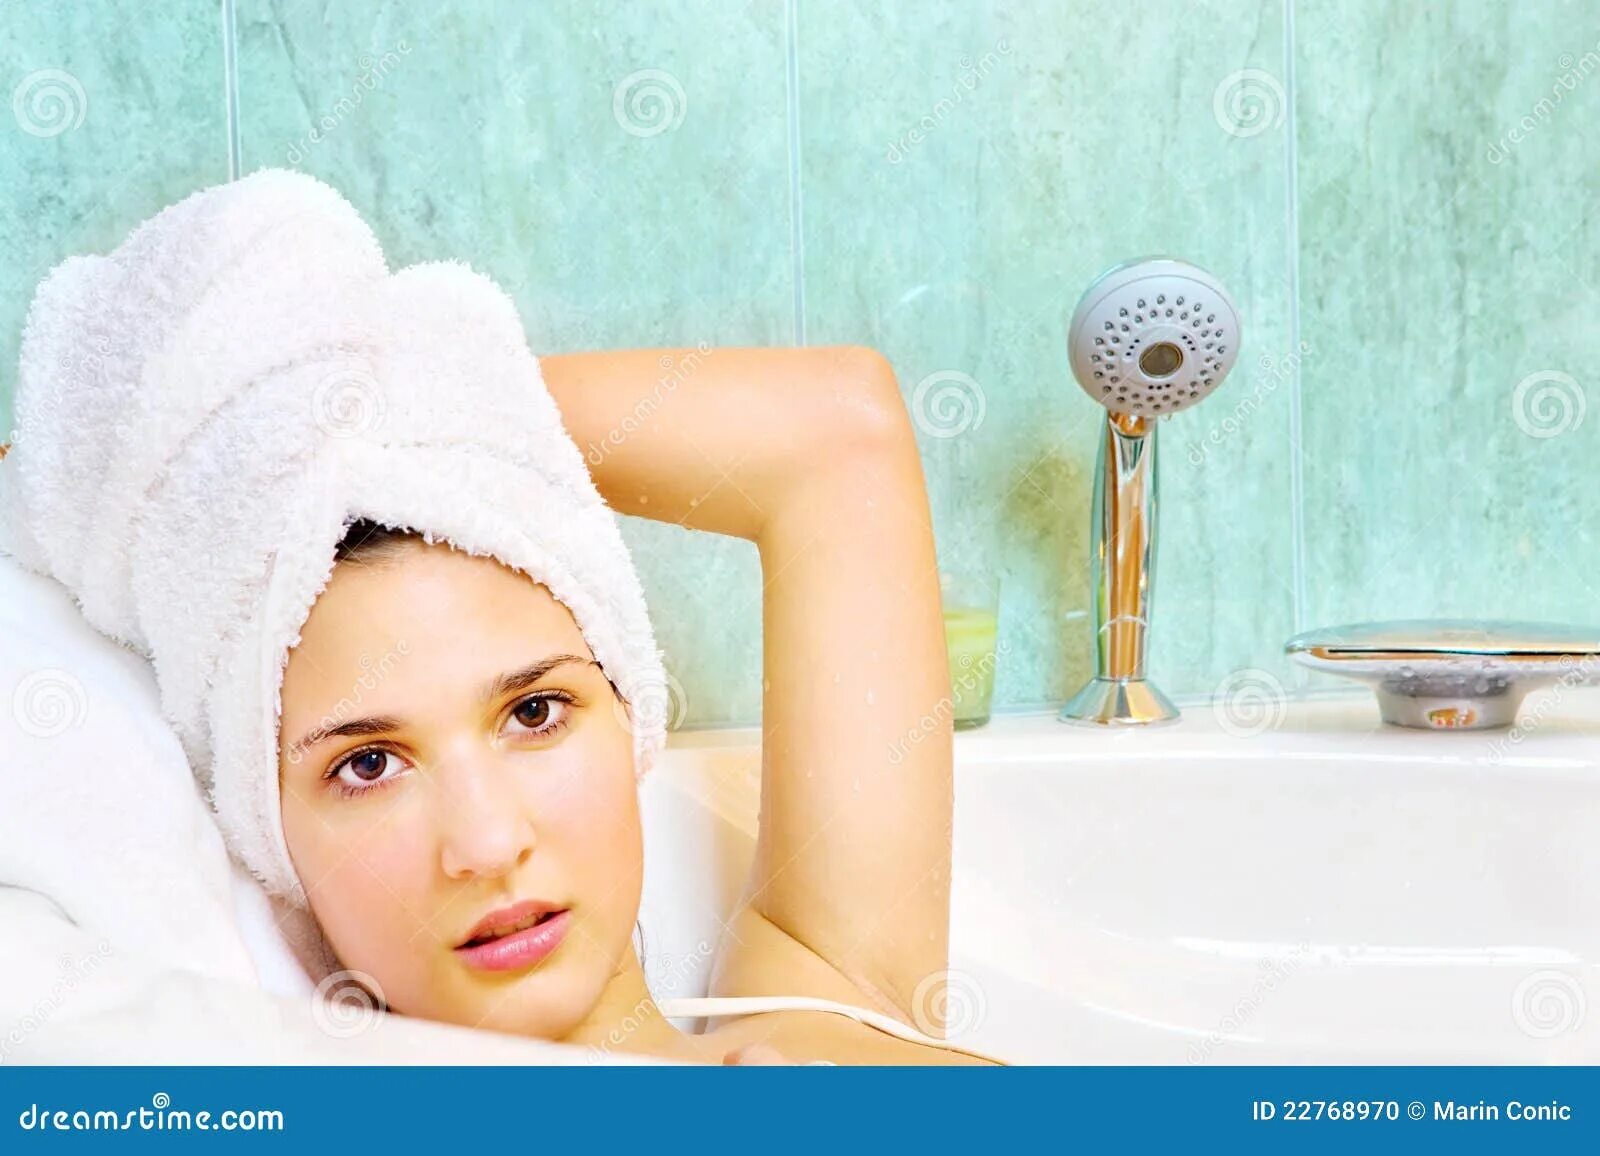 Температура после ванны. Девушка в полотенце в ванной. Женщина с полотенцем на голове. Девушка после ванной. Мытая голова в полотенце.